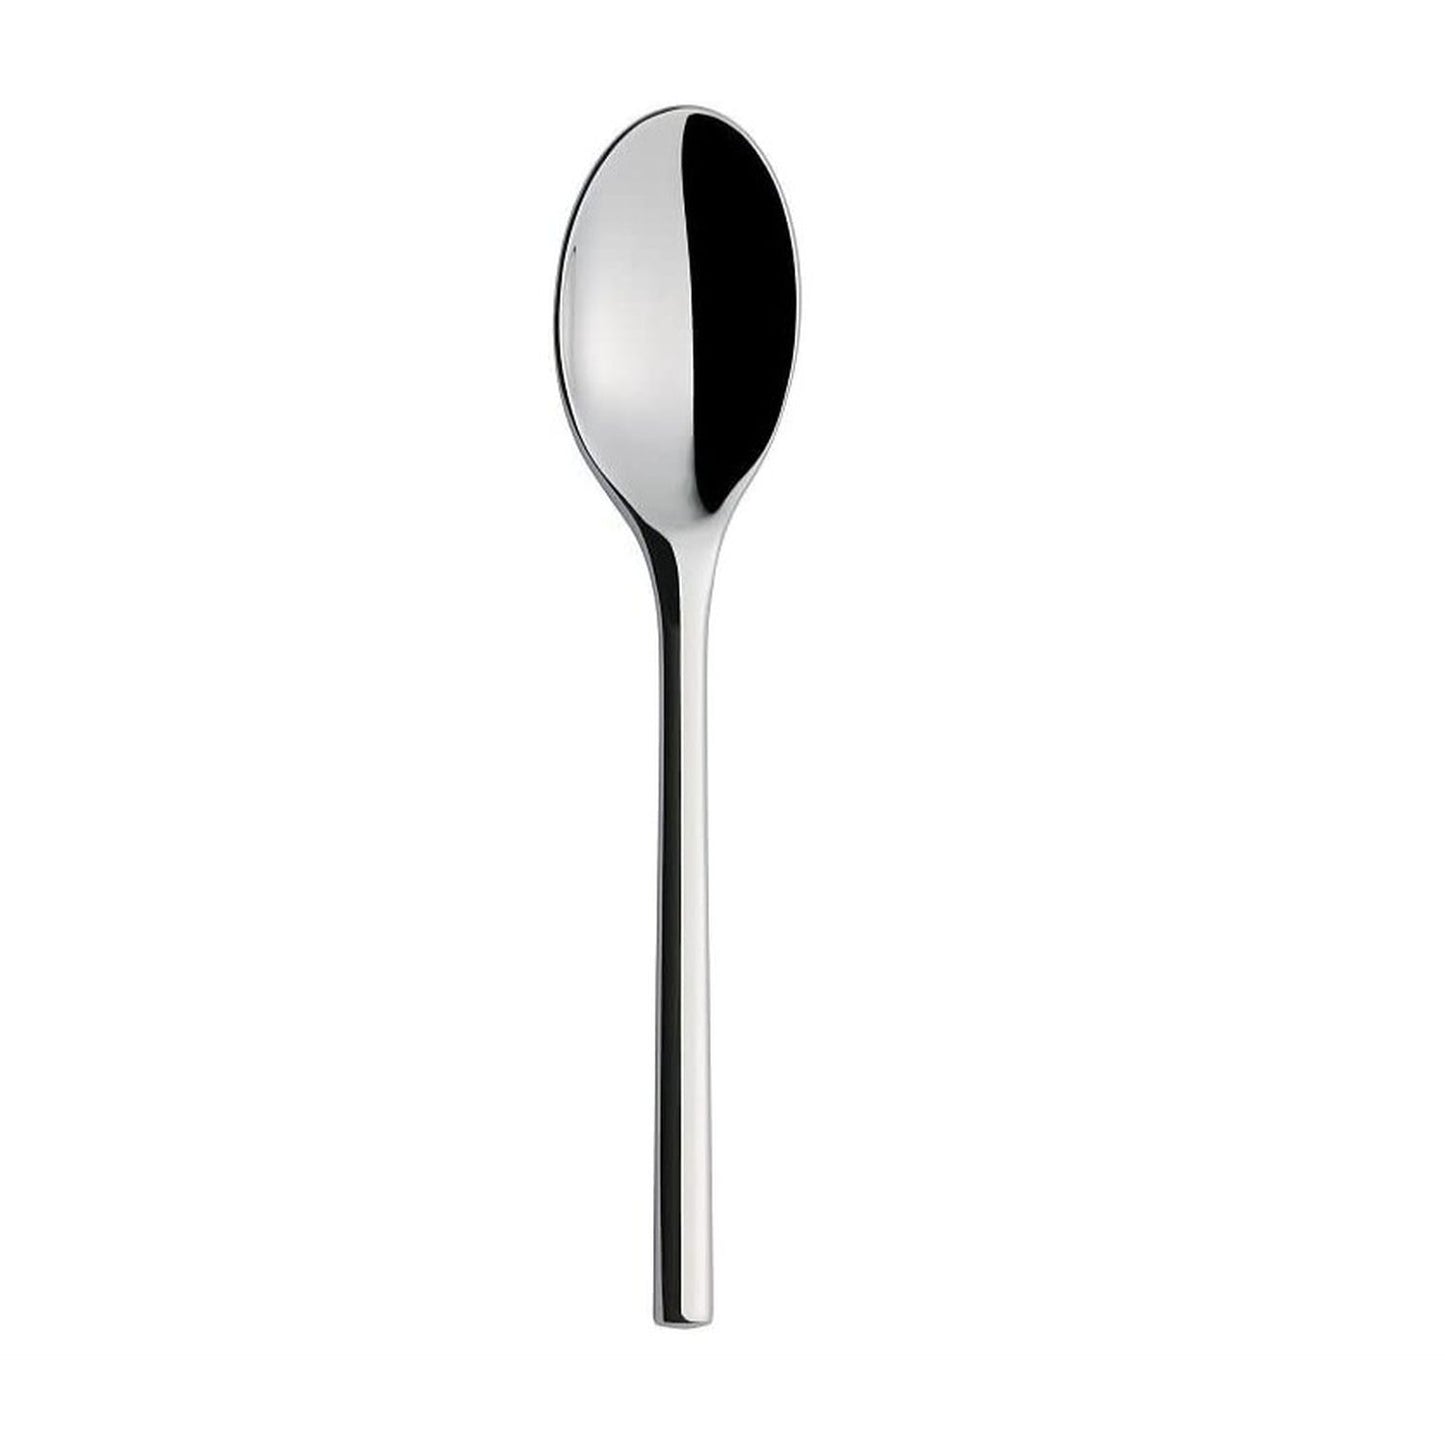 Iittala Artik Dessert Spoon, Stainless Steel, Silver